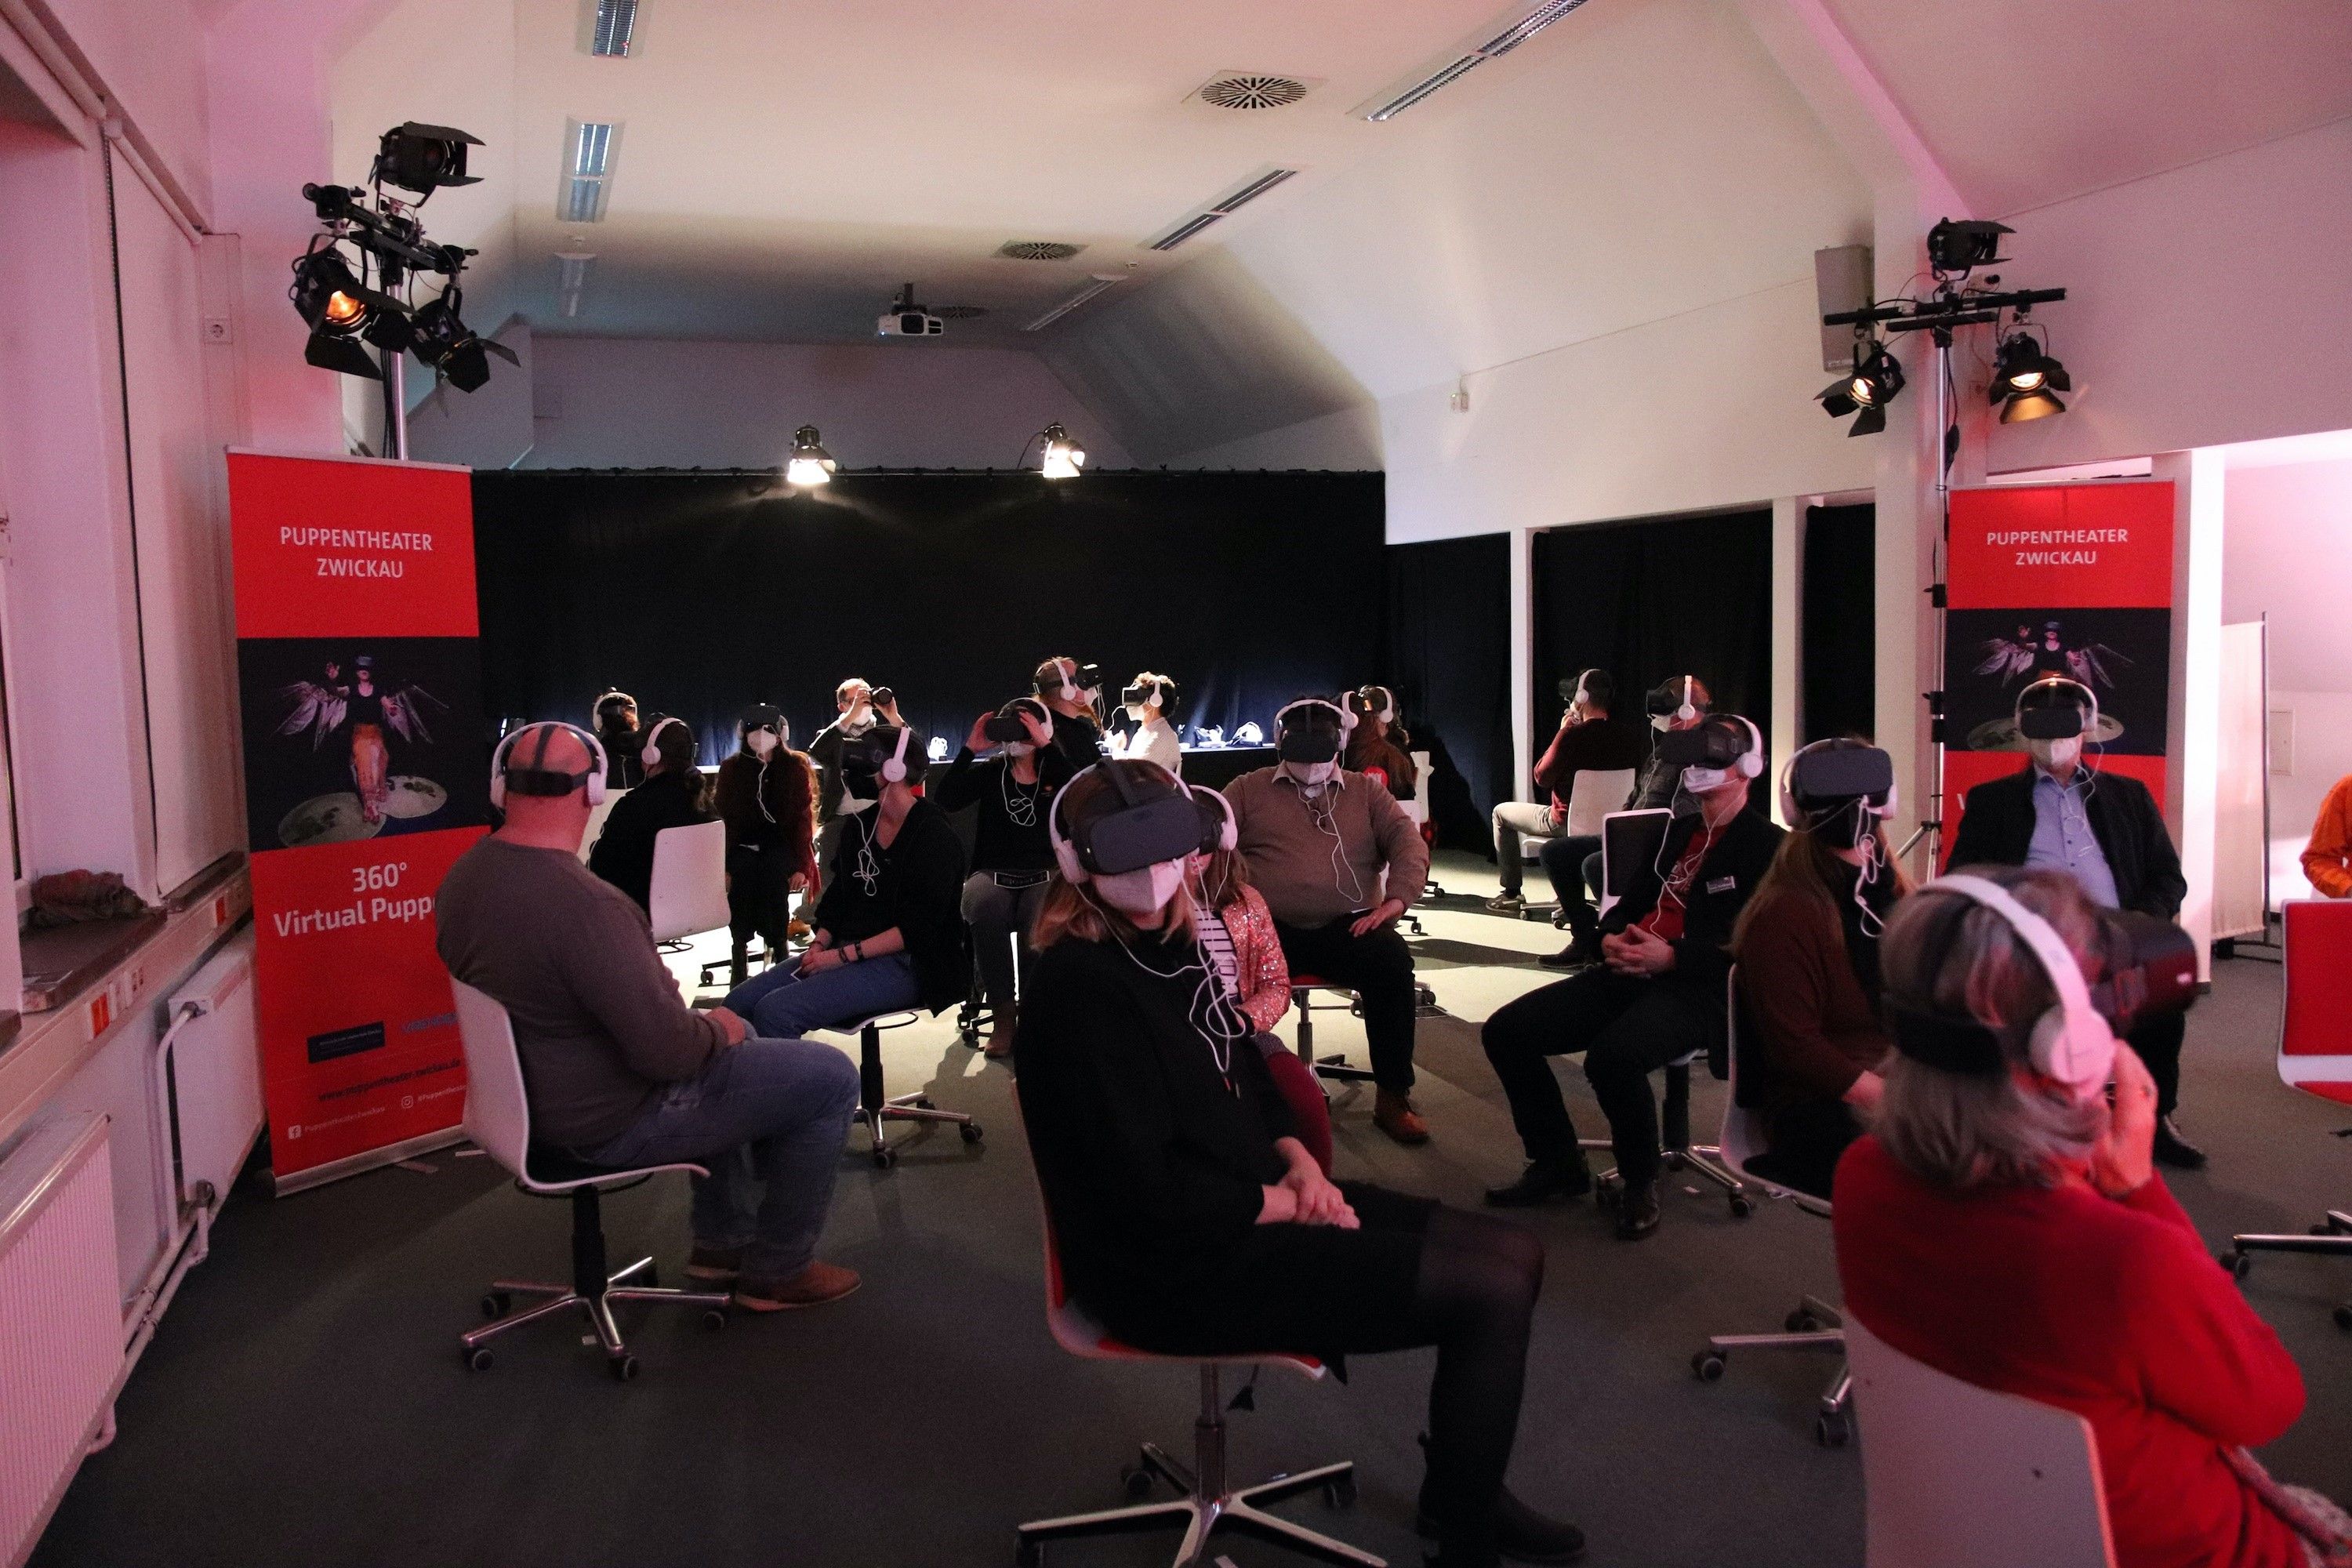 Foto: In einem schwach beleuchteten Raum sitzen viele Menschen mit Abstand auf Drehstühlen und haben alle VR-Brillen und Kopfhörer auf.